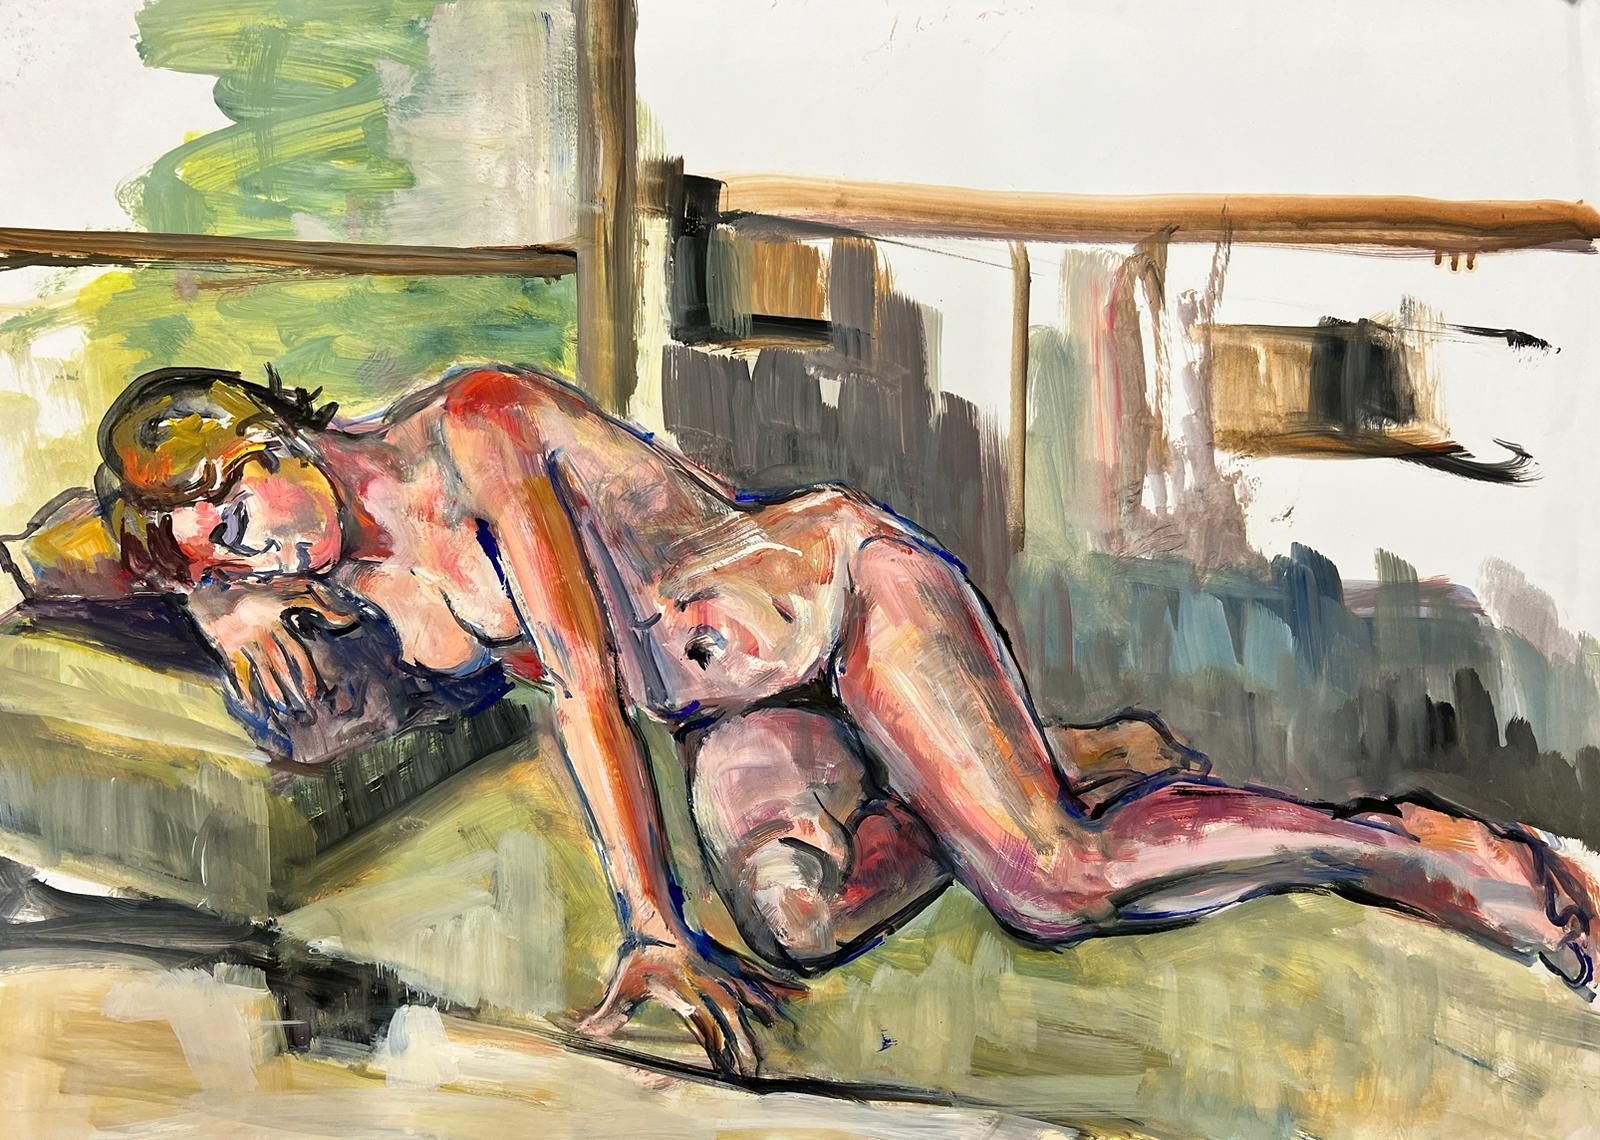 Figurative Painting French Modernist - Peinture moderniste française d'une femme nue couchée des années 1970, collection Provence